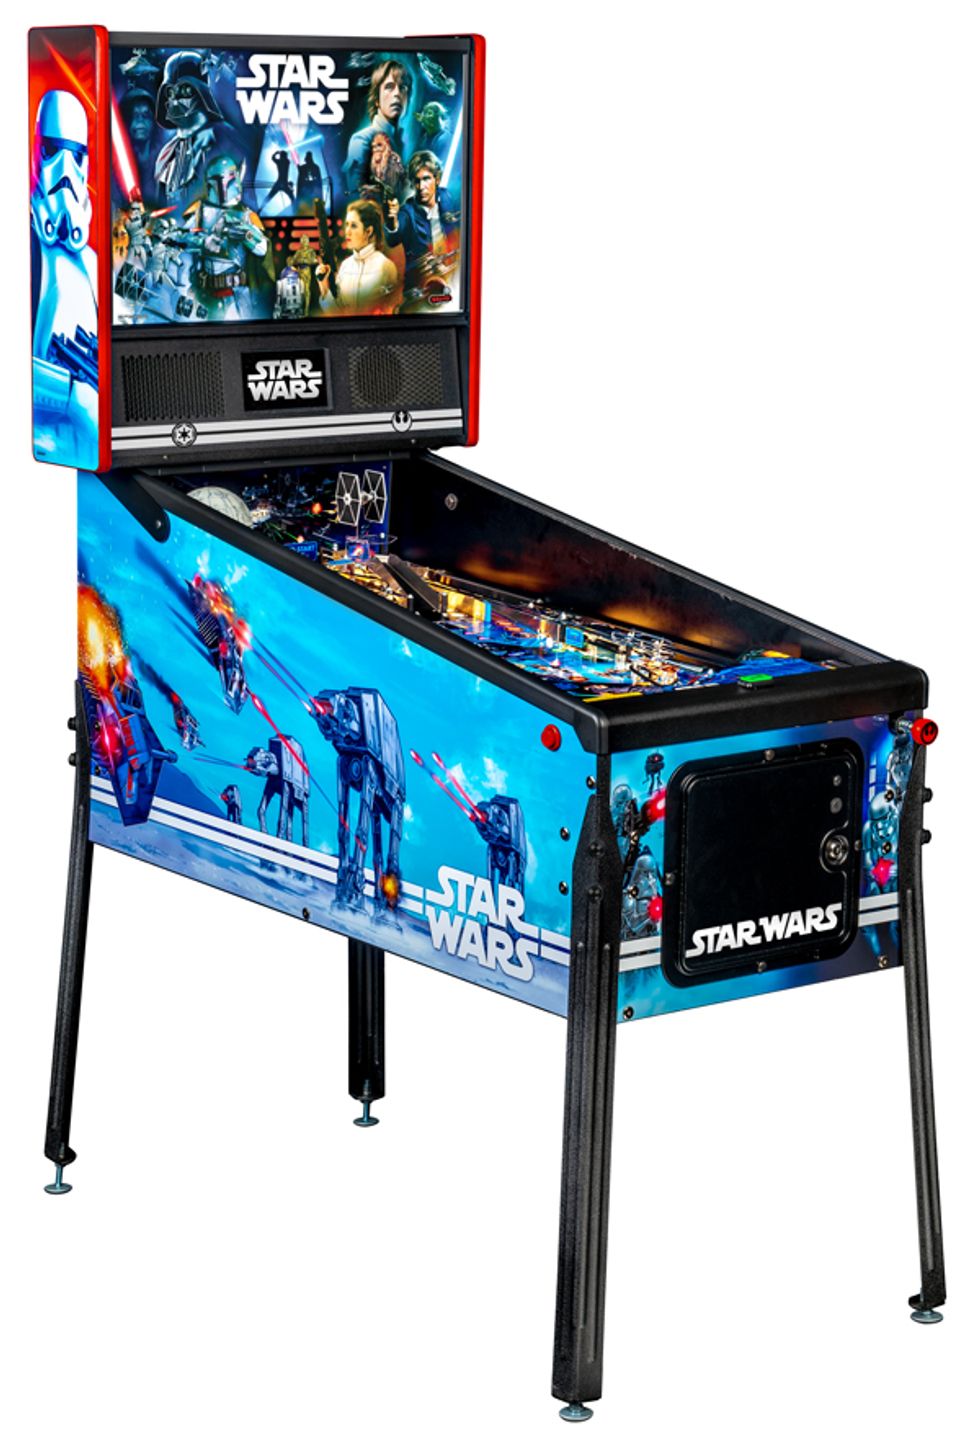 Full view of Star Wars pinball machine.